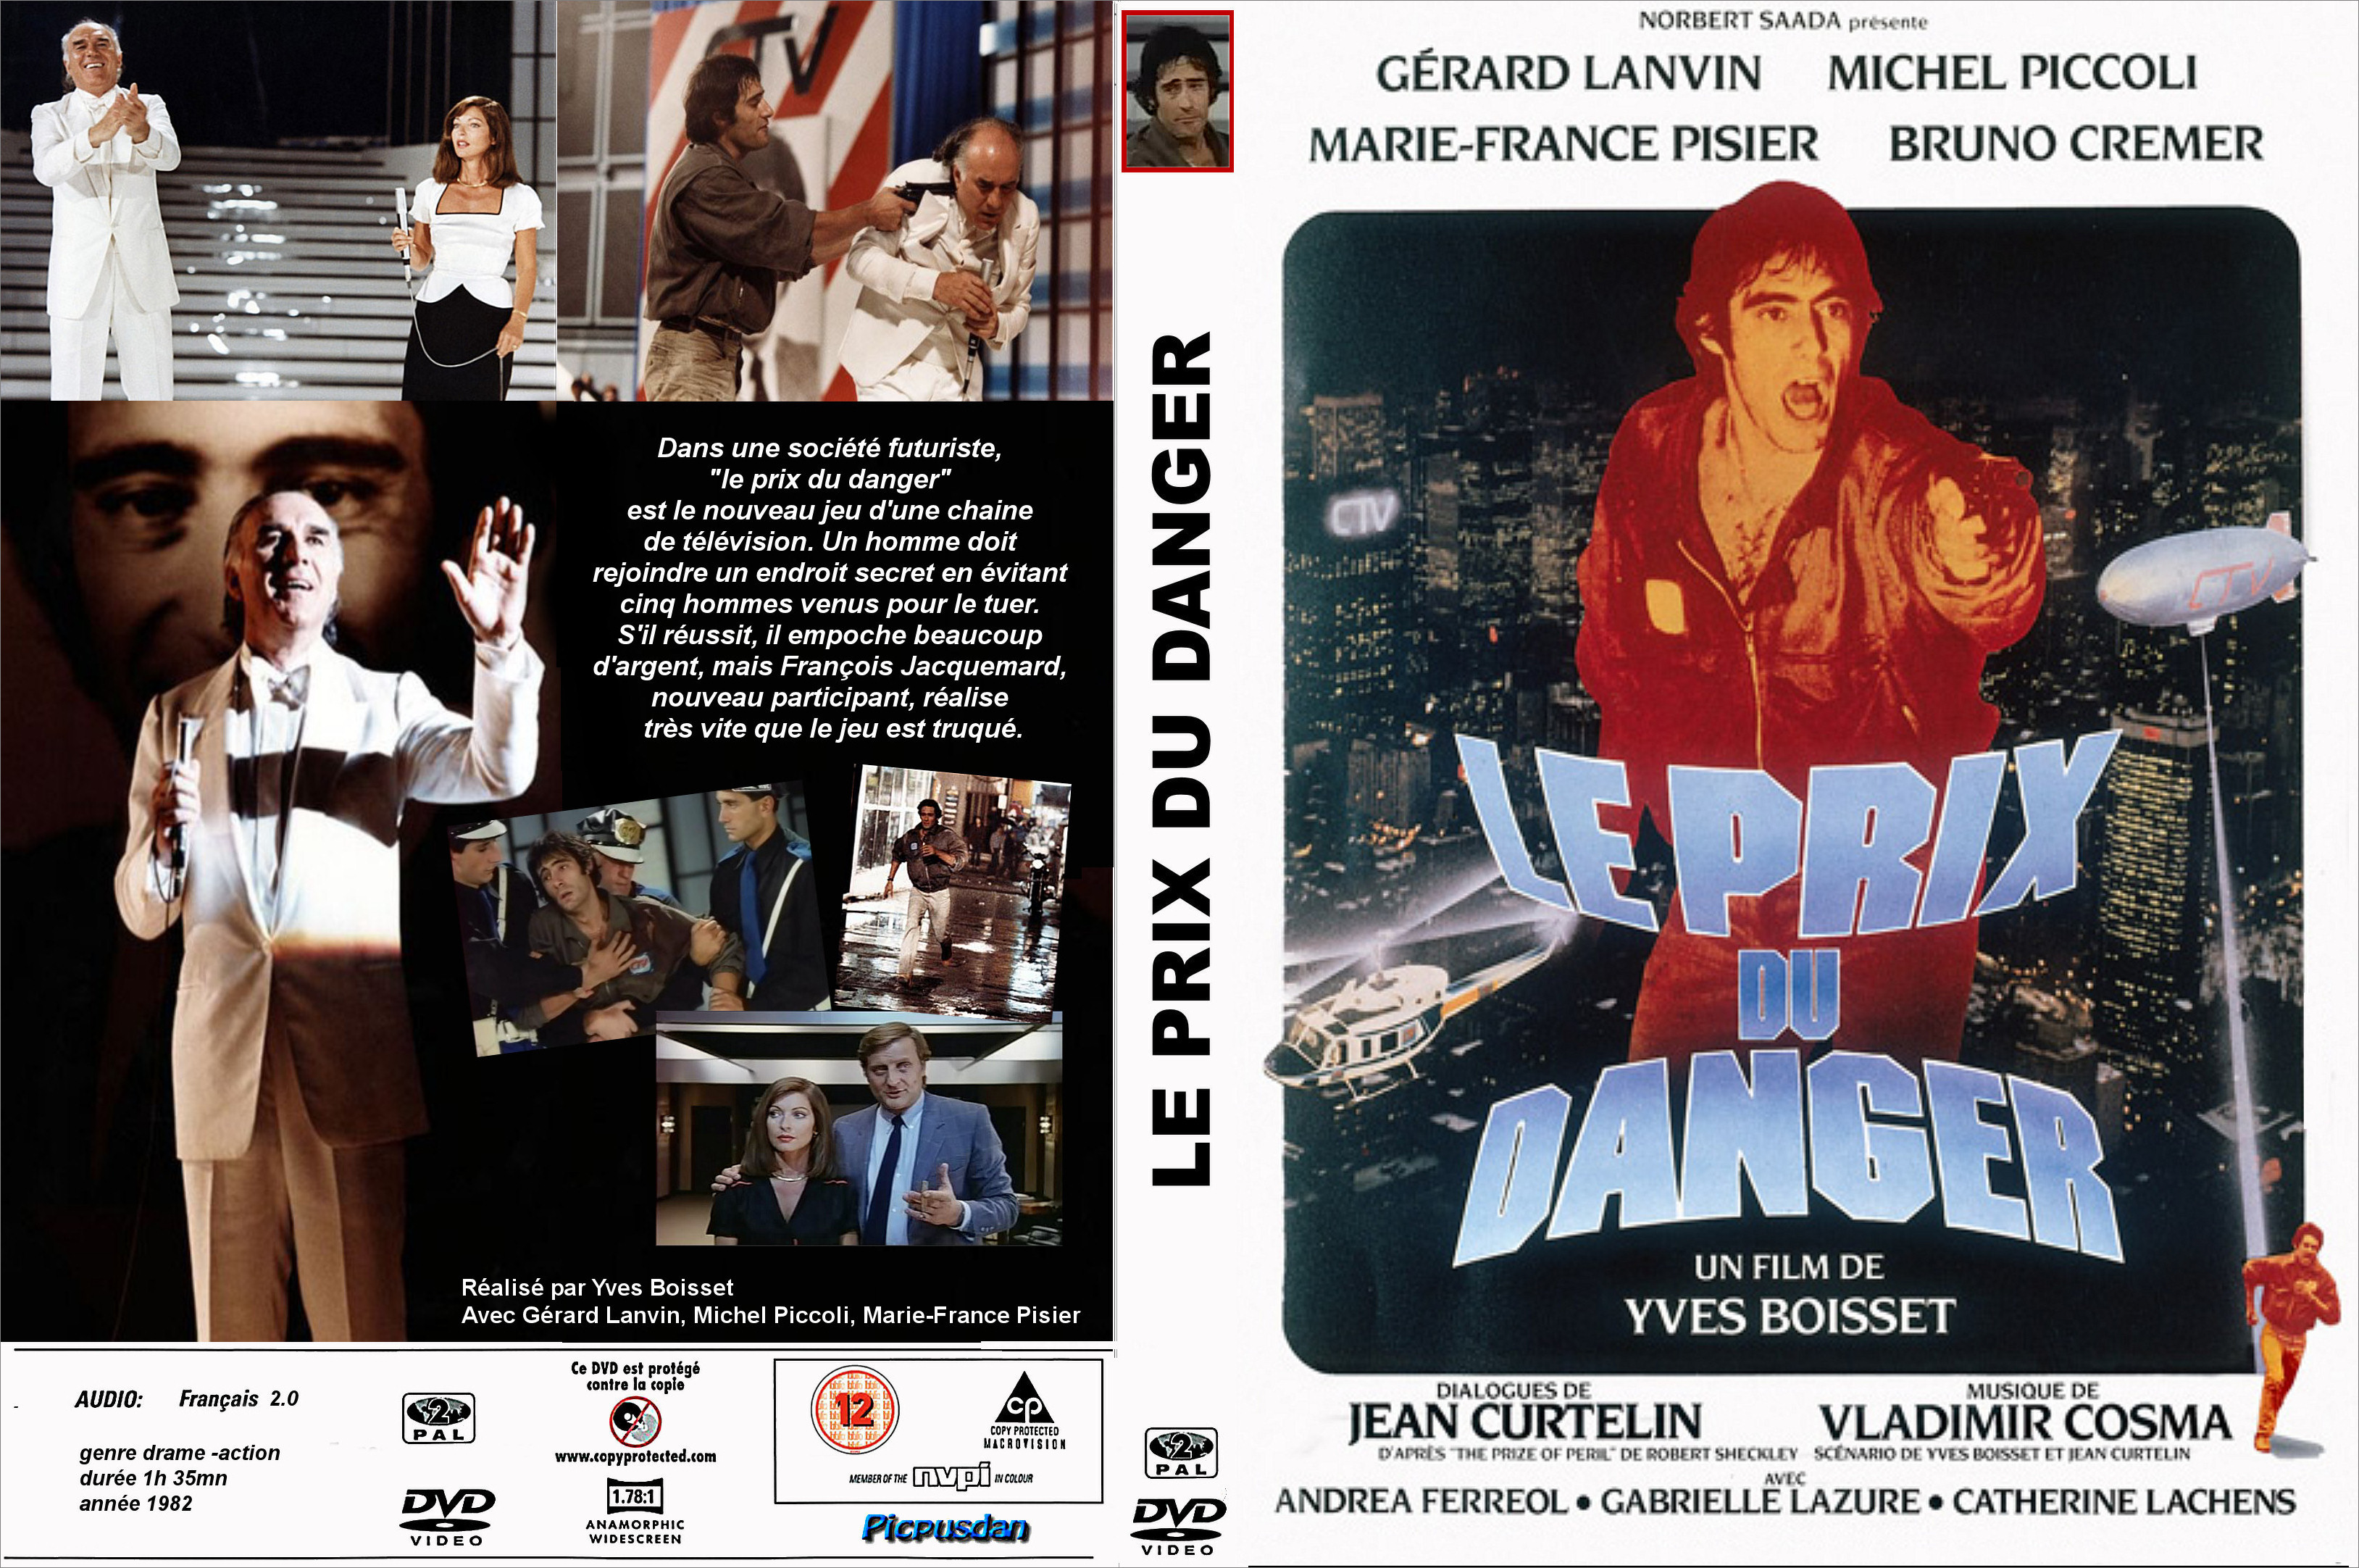 Jaquette DVD Le prix du danger (1982) custom